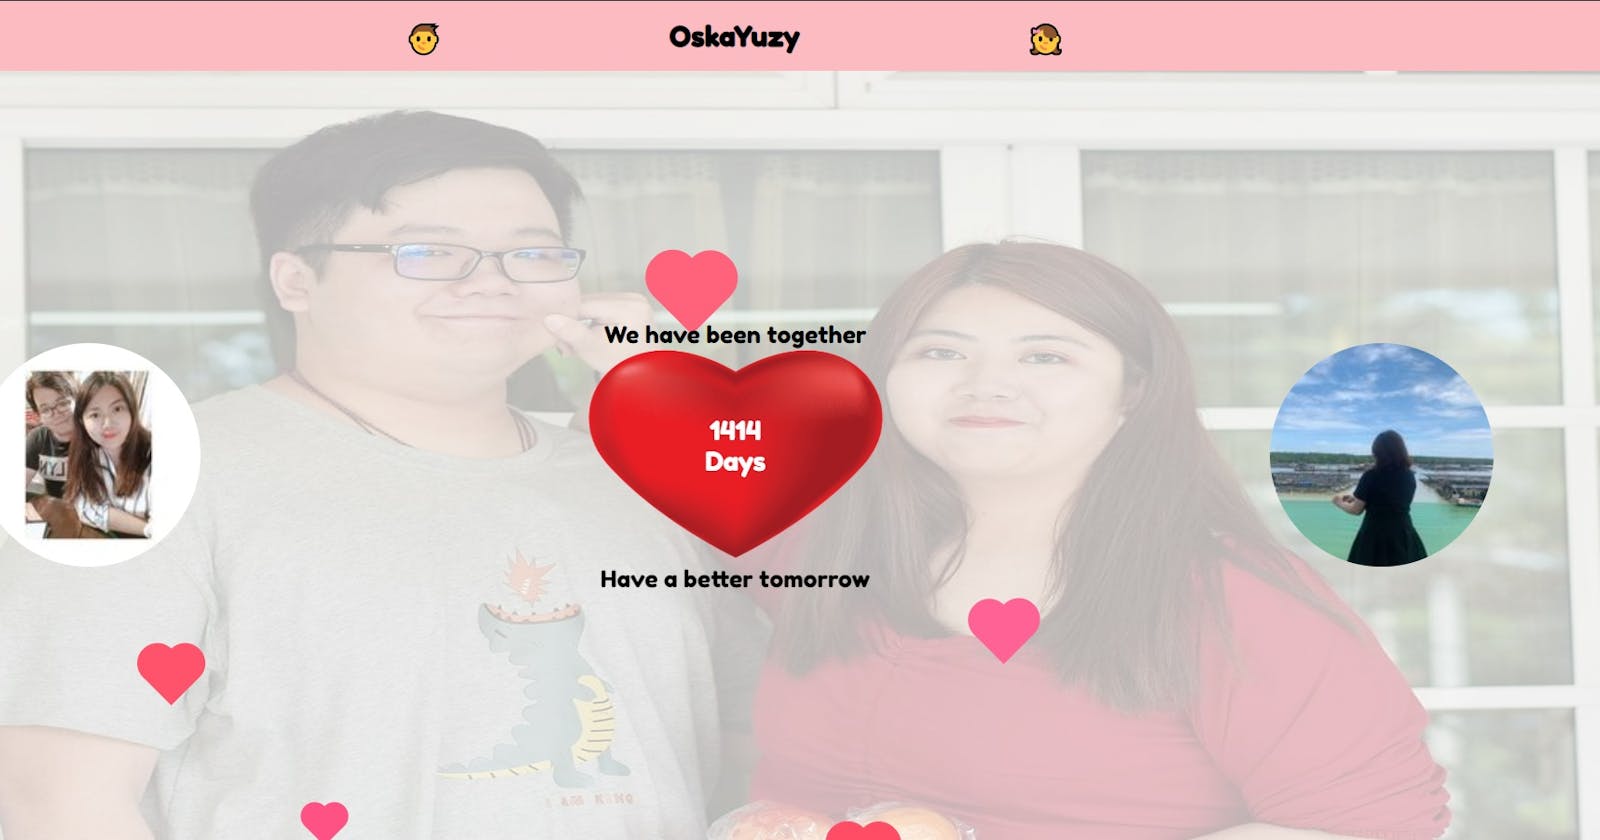 Website Between Me And Her - OskaYuzy